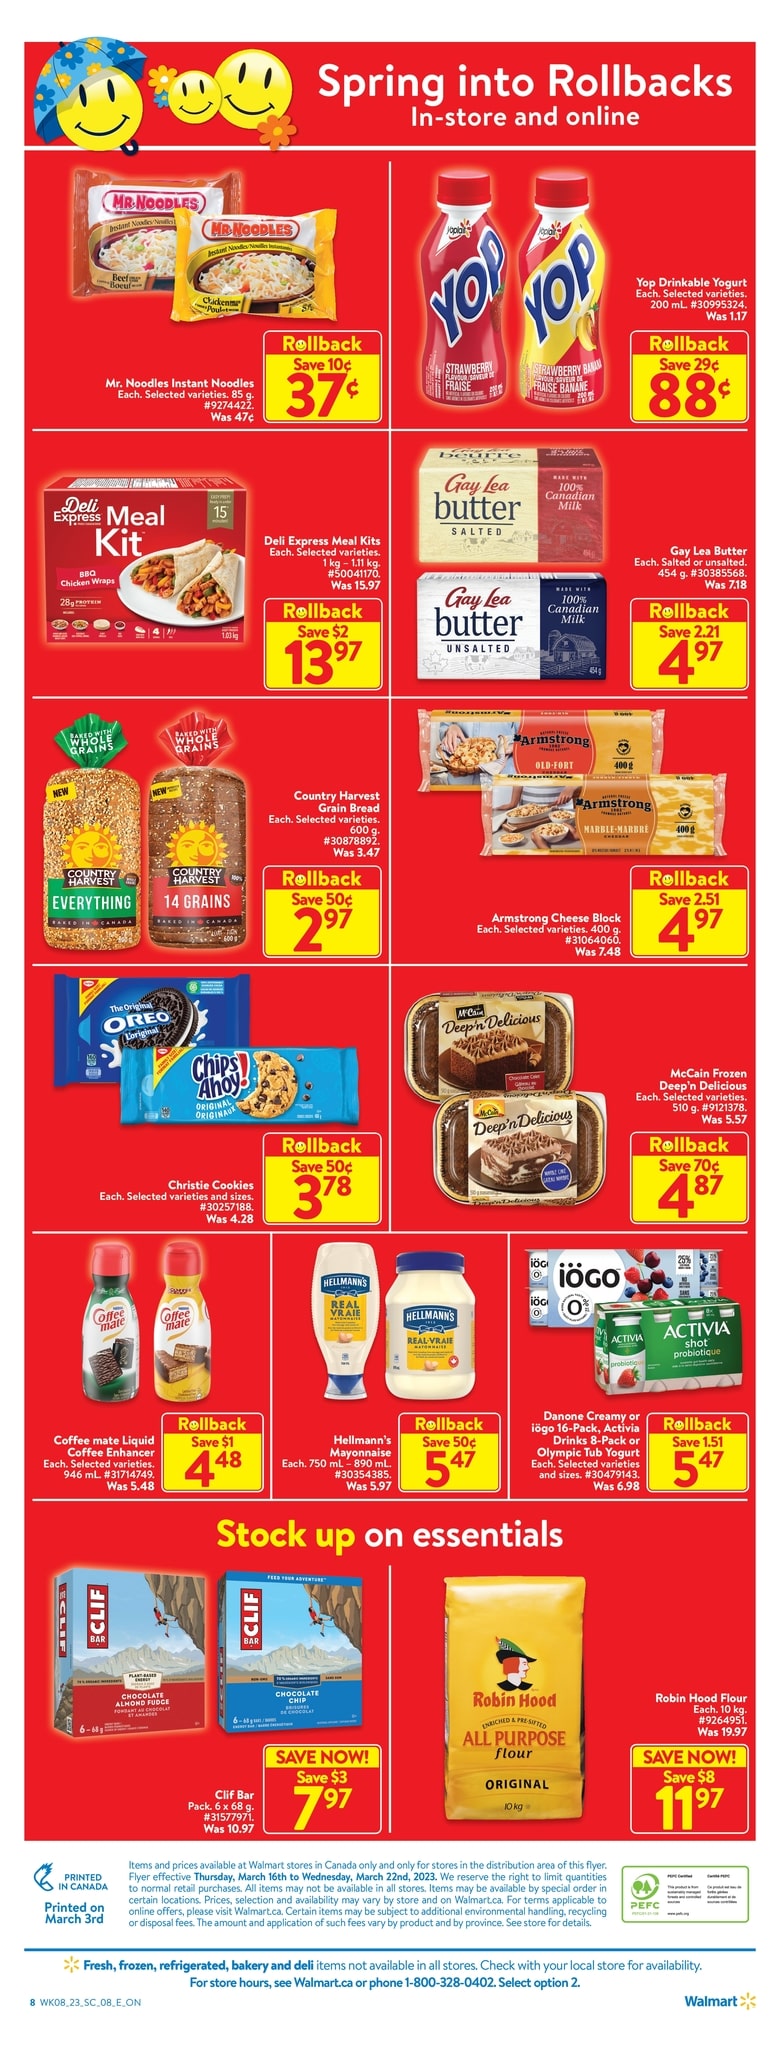 Walmart Canada - Weekly Flyer Specials - Page 2